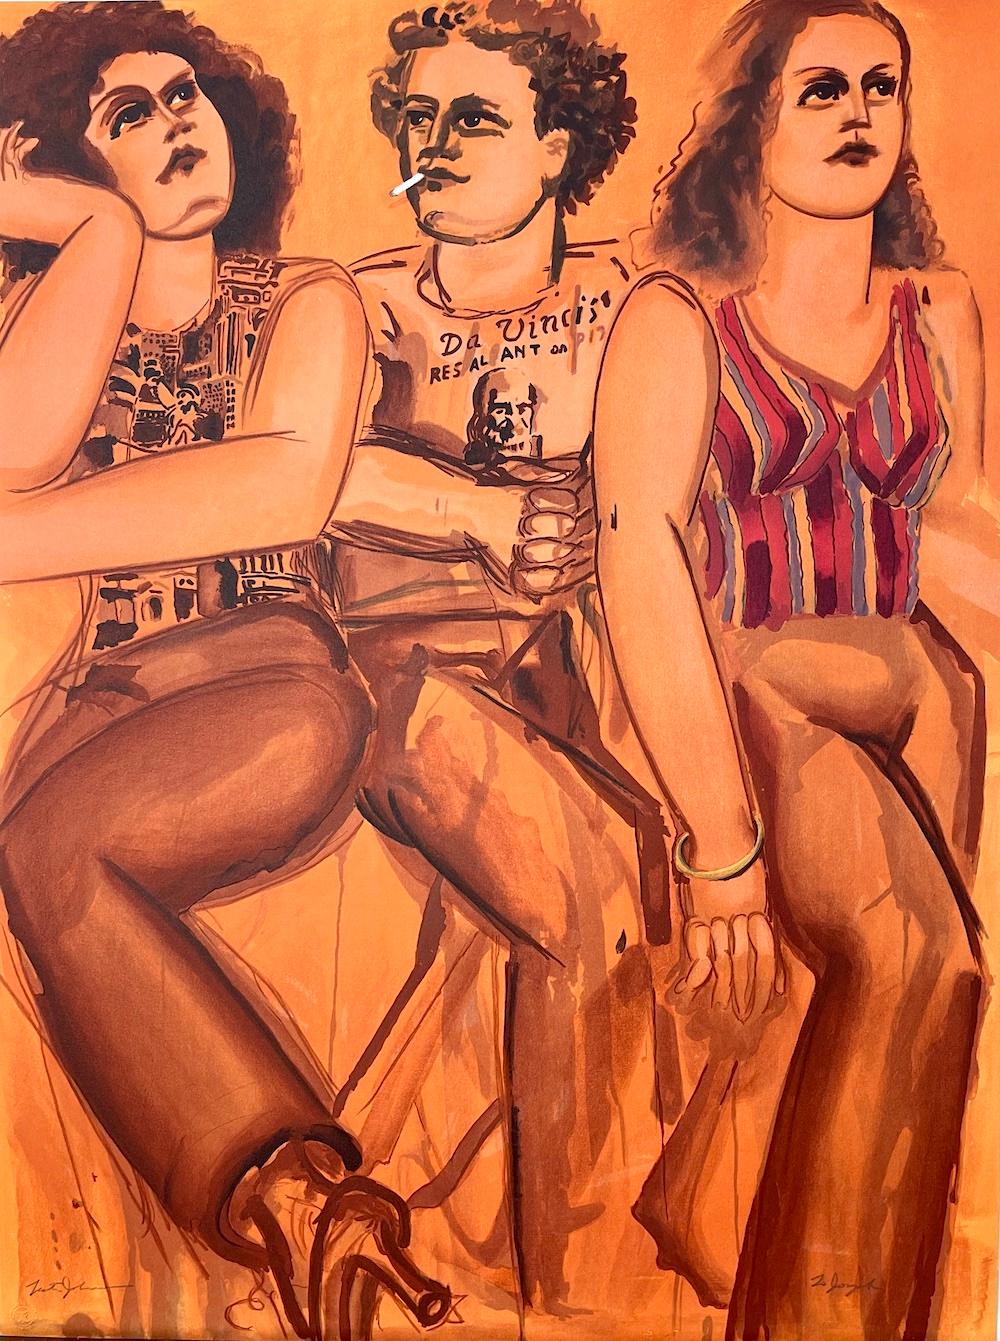 1980's threesome porn video in art studio